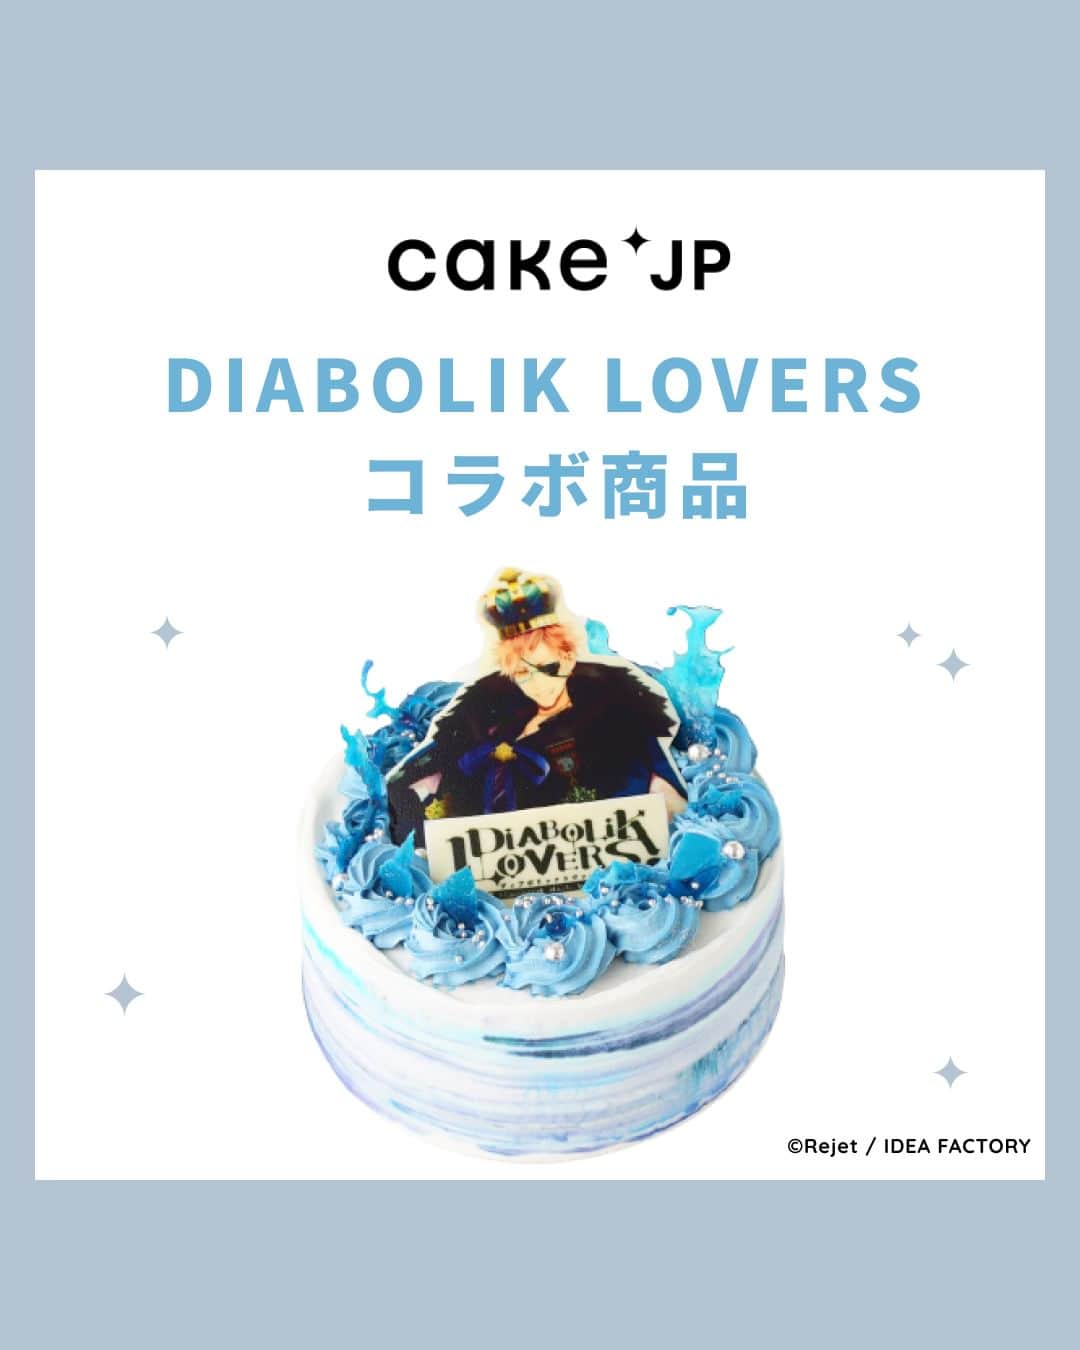 Cake.jpのインスタグラム